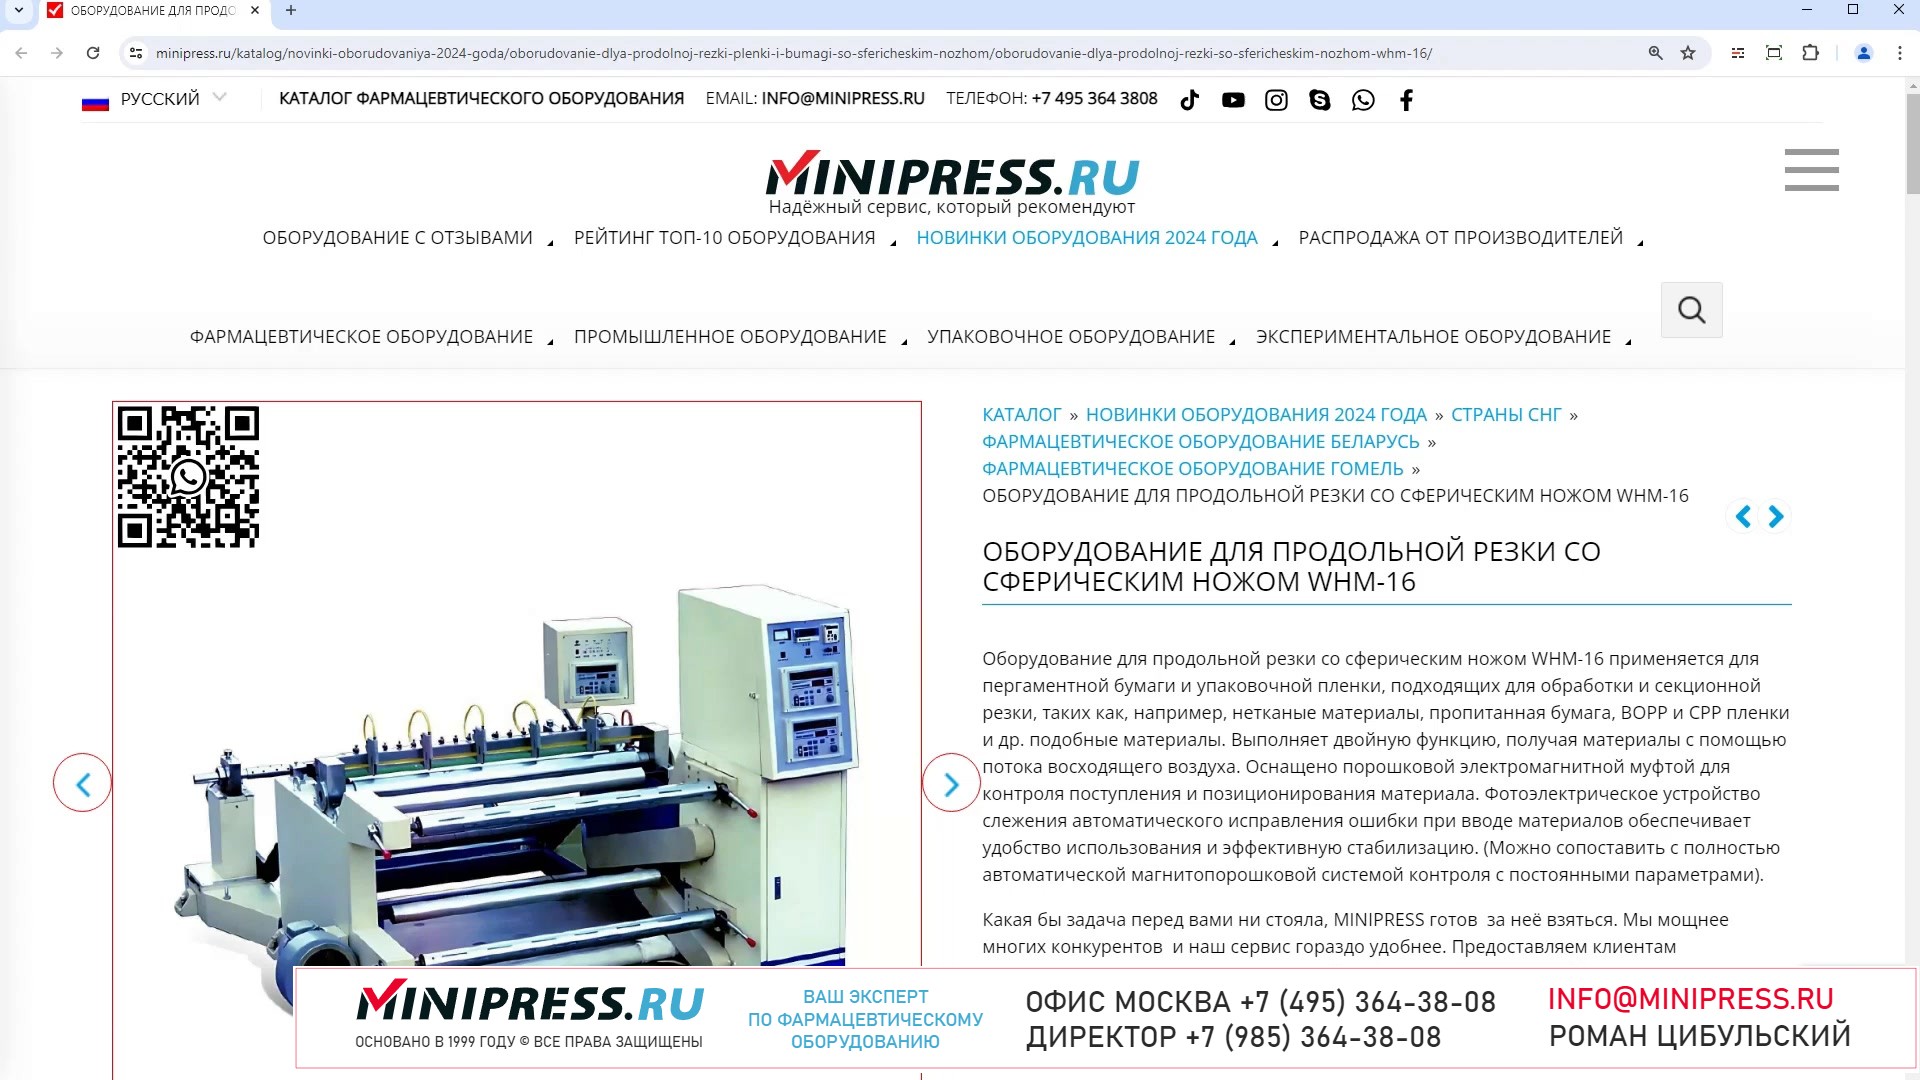 Minipress.ru Оборудование для продольной резки со сферическим ножом WHM-16